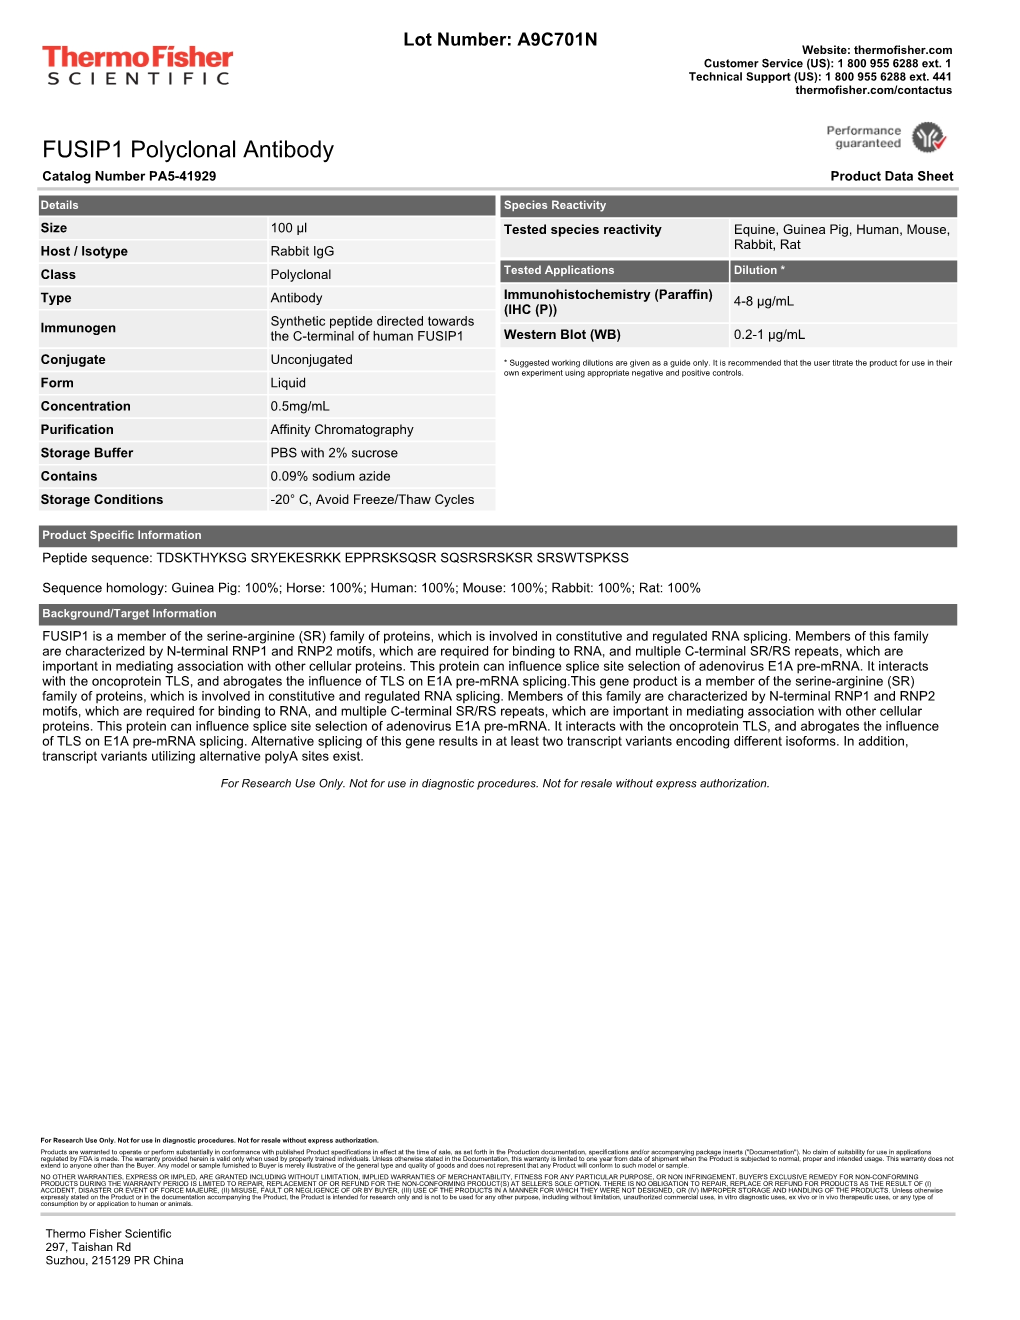 FUSIP1 Polyclonal Antibody Catalog Number PA5-41929 Product Data Sheet